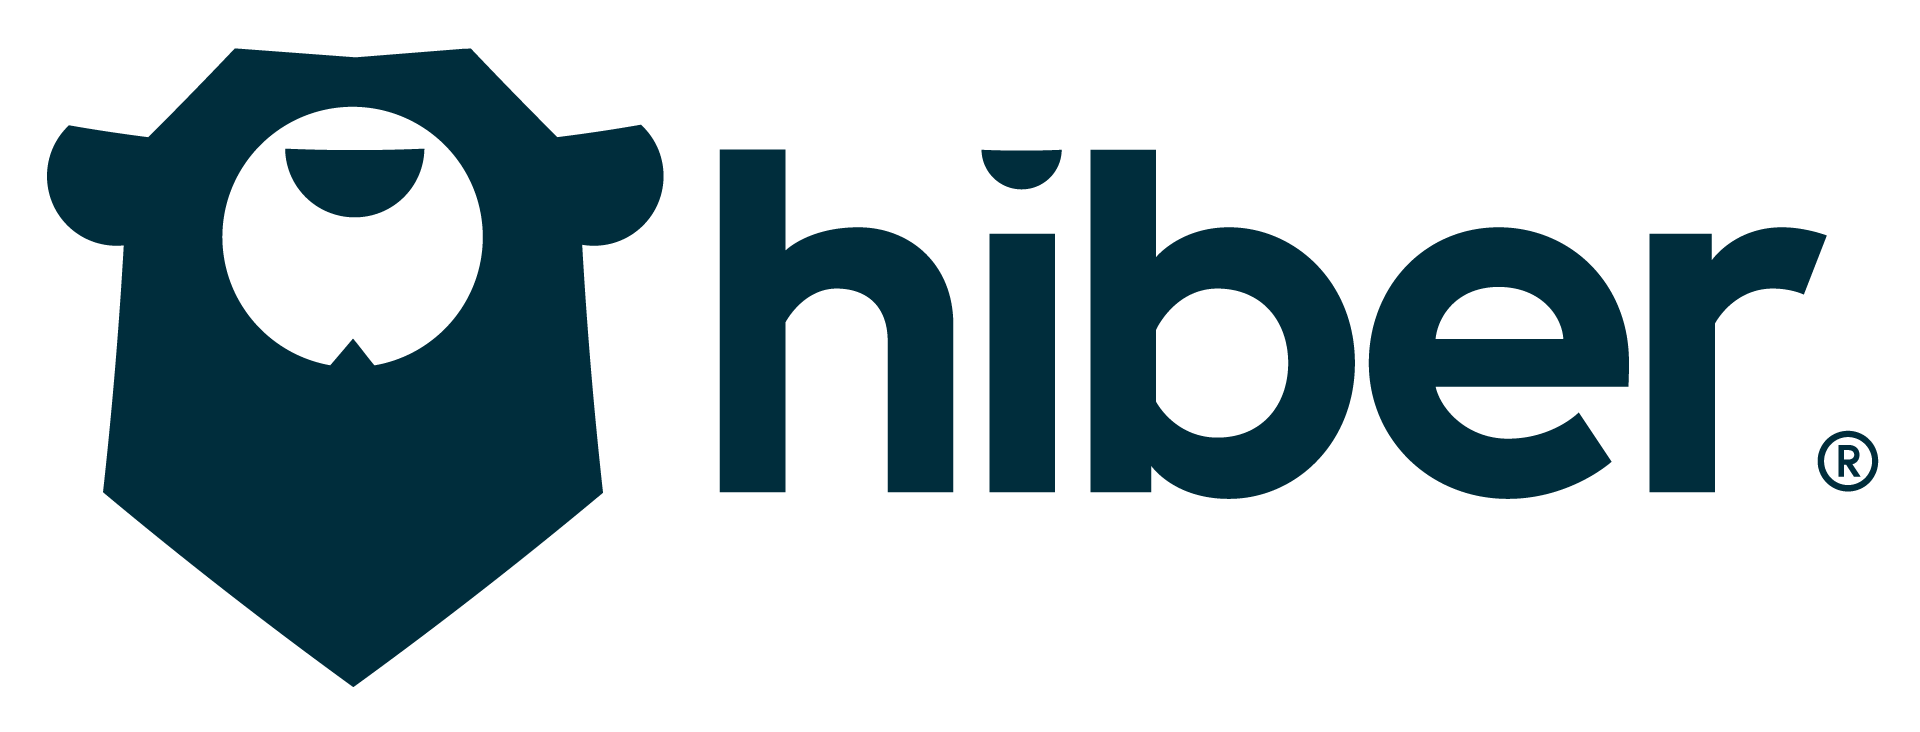 Hiber-Logo_Landscape.png